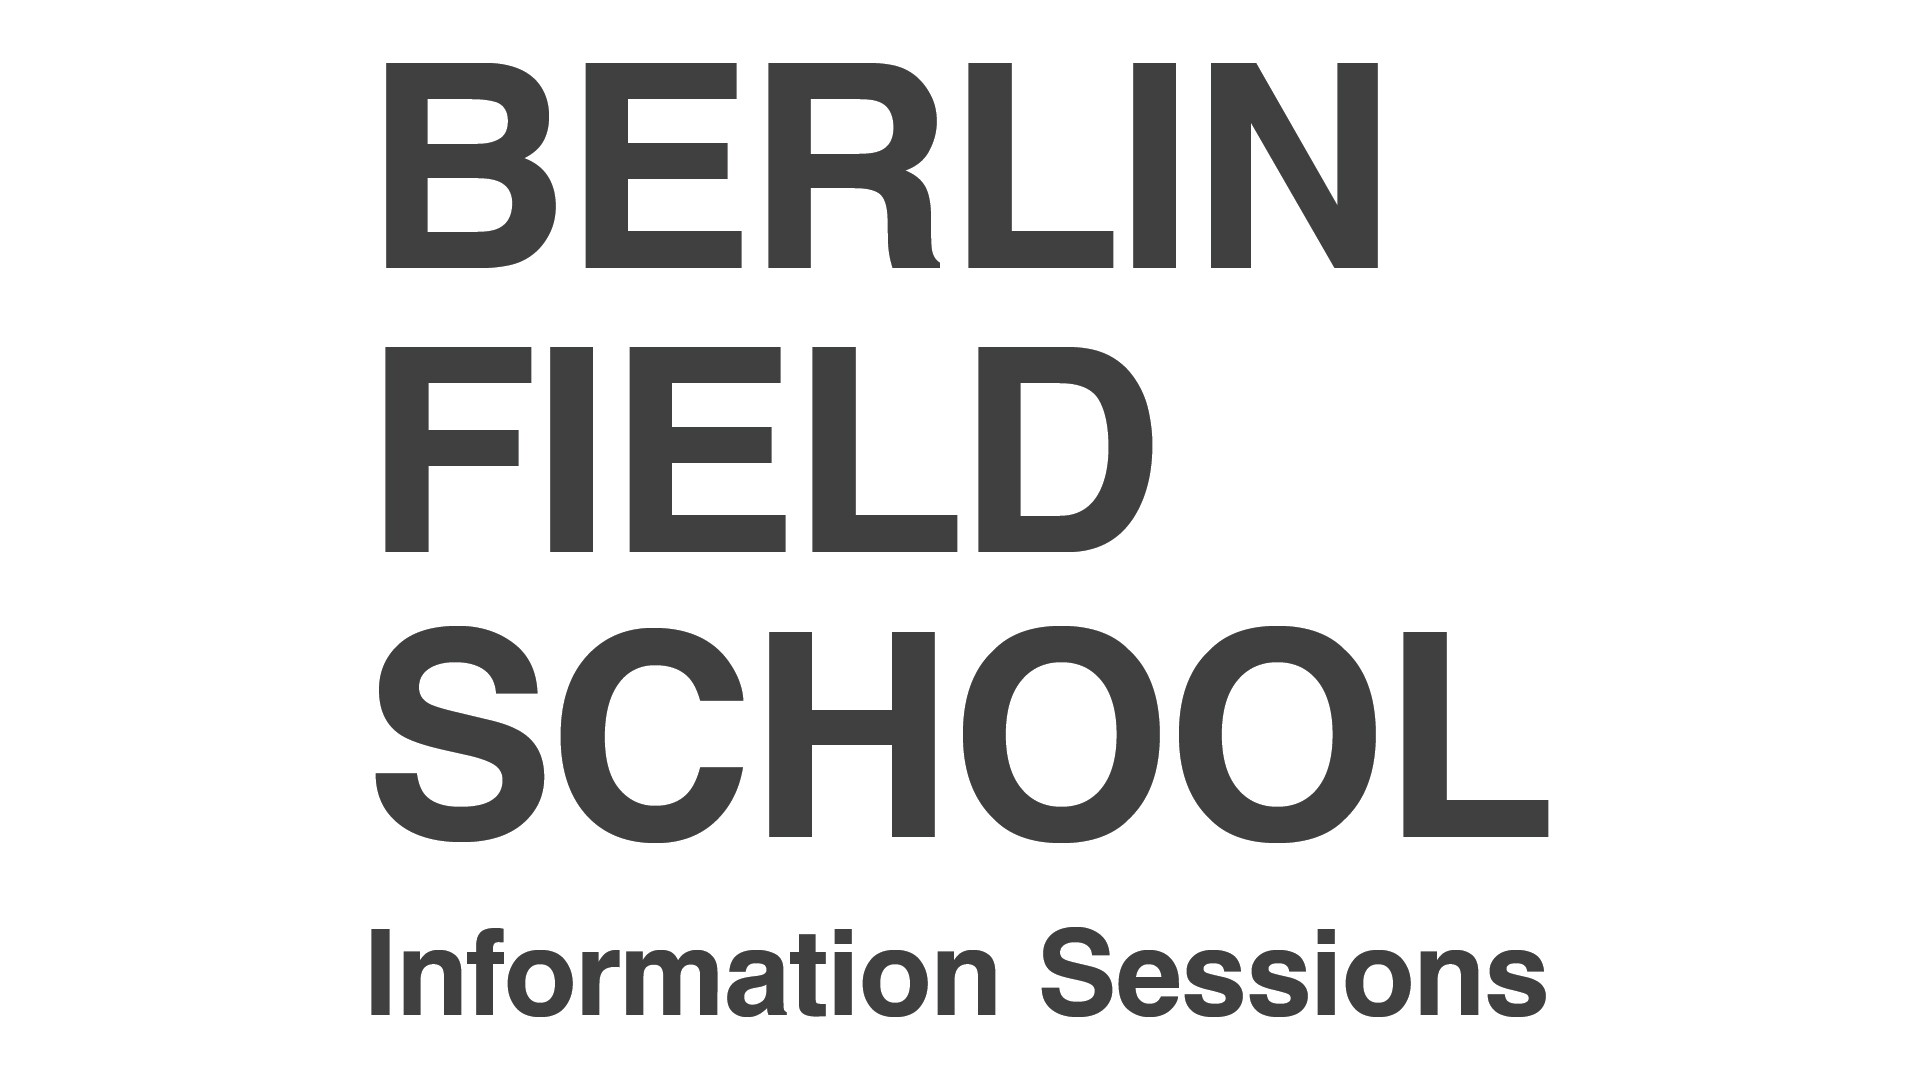 Berlin Field School Information Sessions